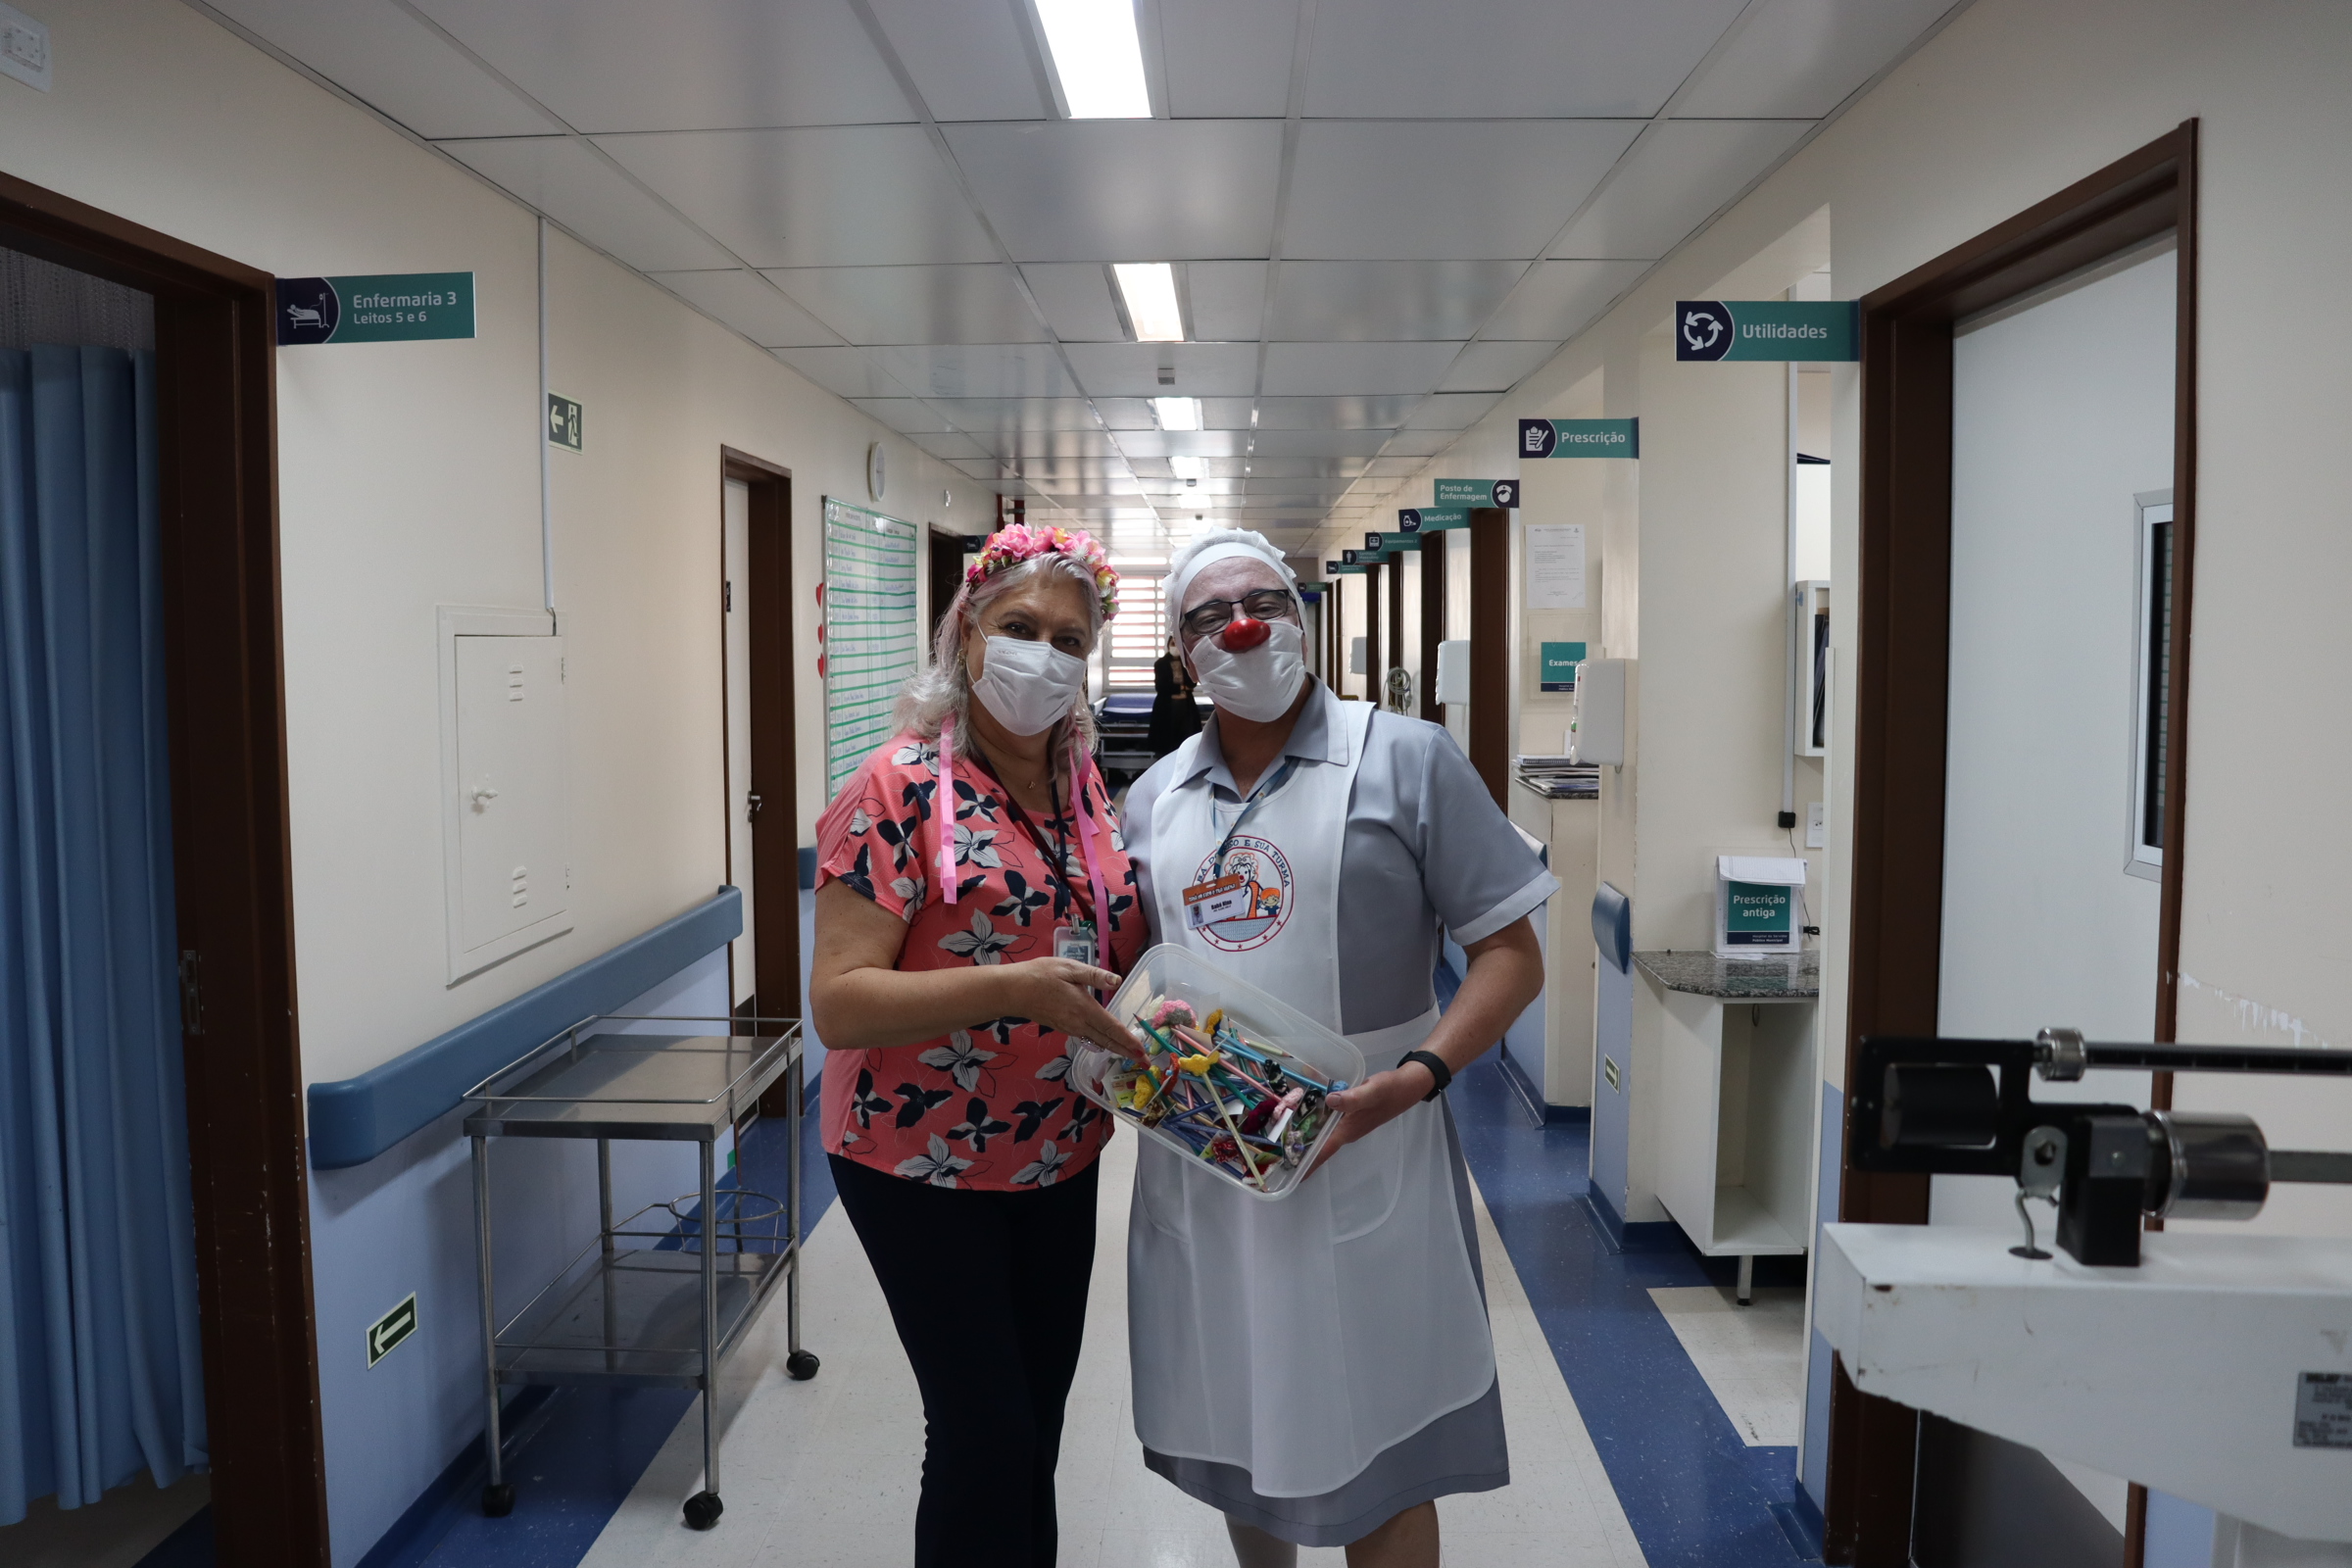 Fotografia da Coordenadora do CAV e do voluntário fantasiado de enfermeira, com a cesta de brindes nas mãos